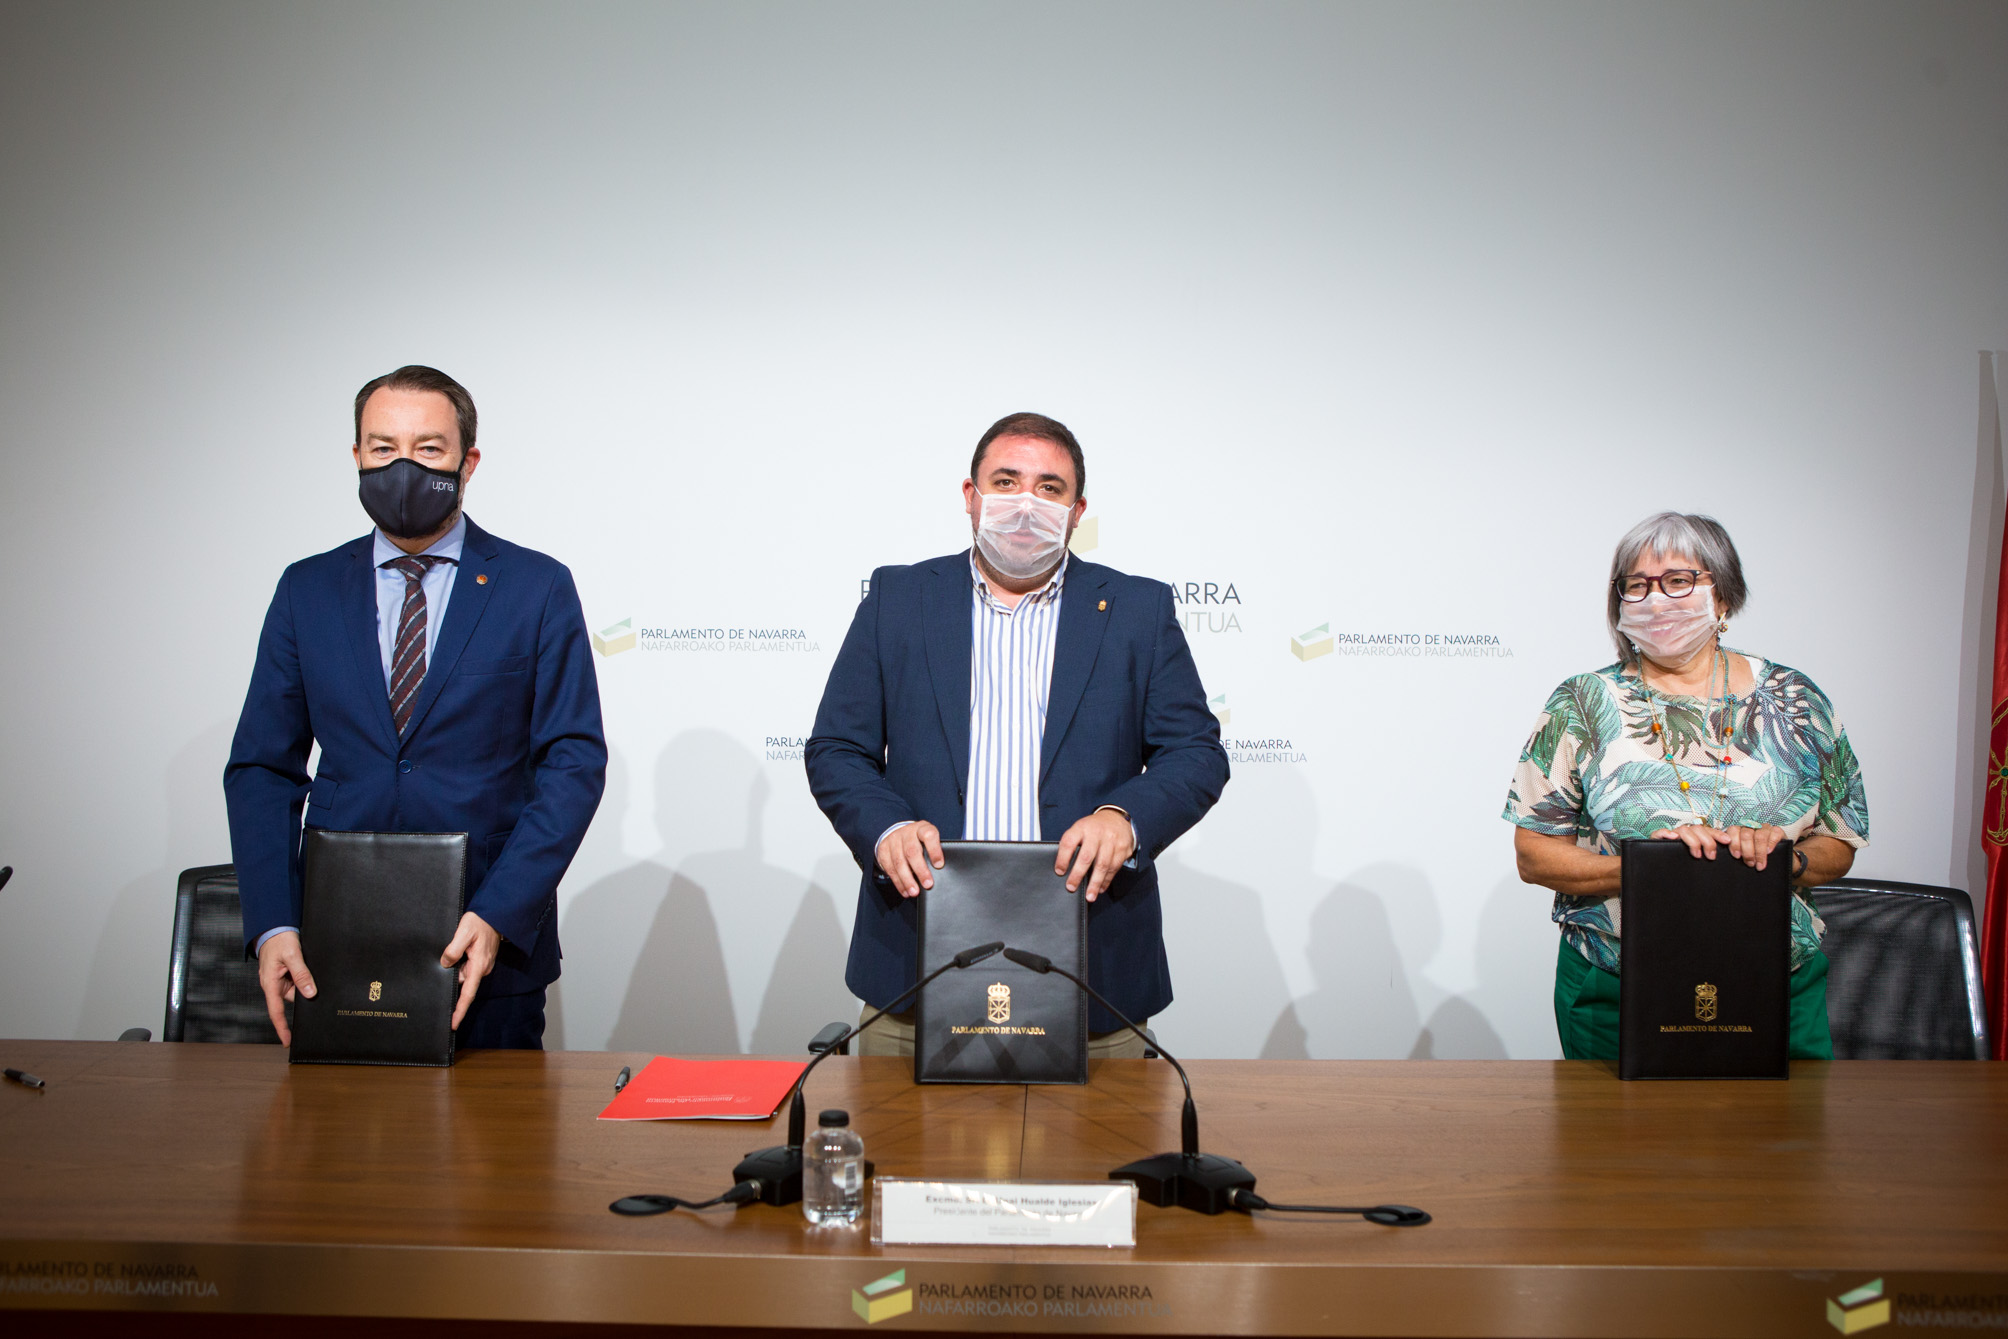 Fotografía de la presentación del Convenio en la que aparecen Ramón Gonzalo, rector de la UPNA, Unai Hualde, presidente del Parlamento de Navarra, y Mariluz Sanz, presidenta de CERMIN.